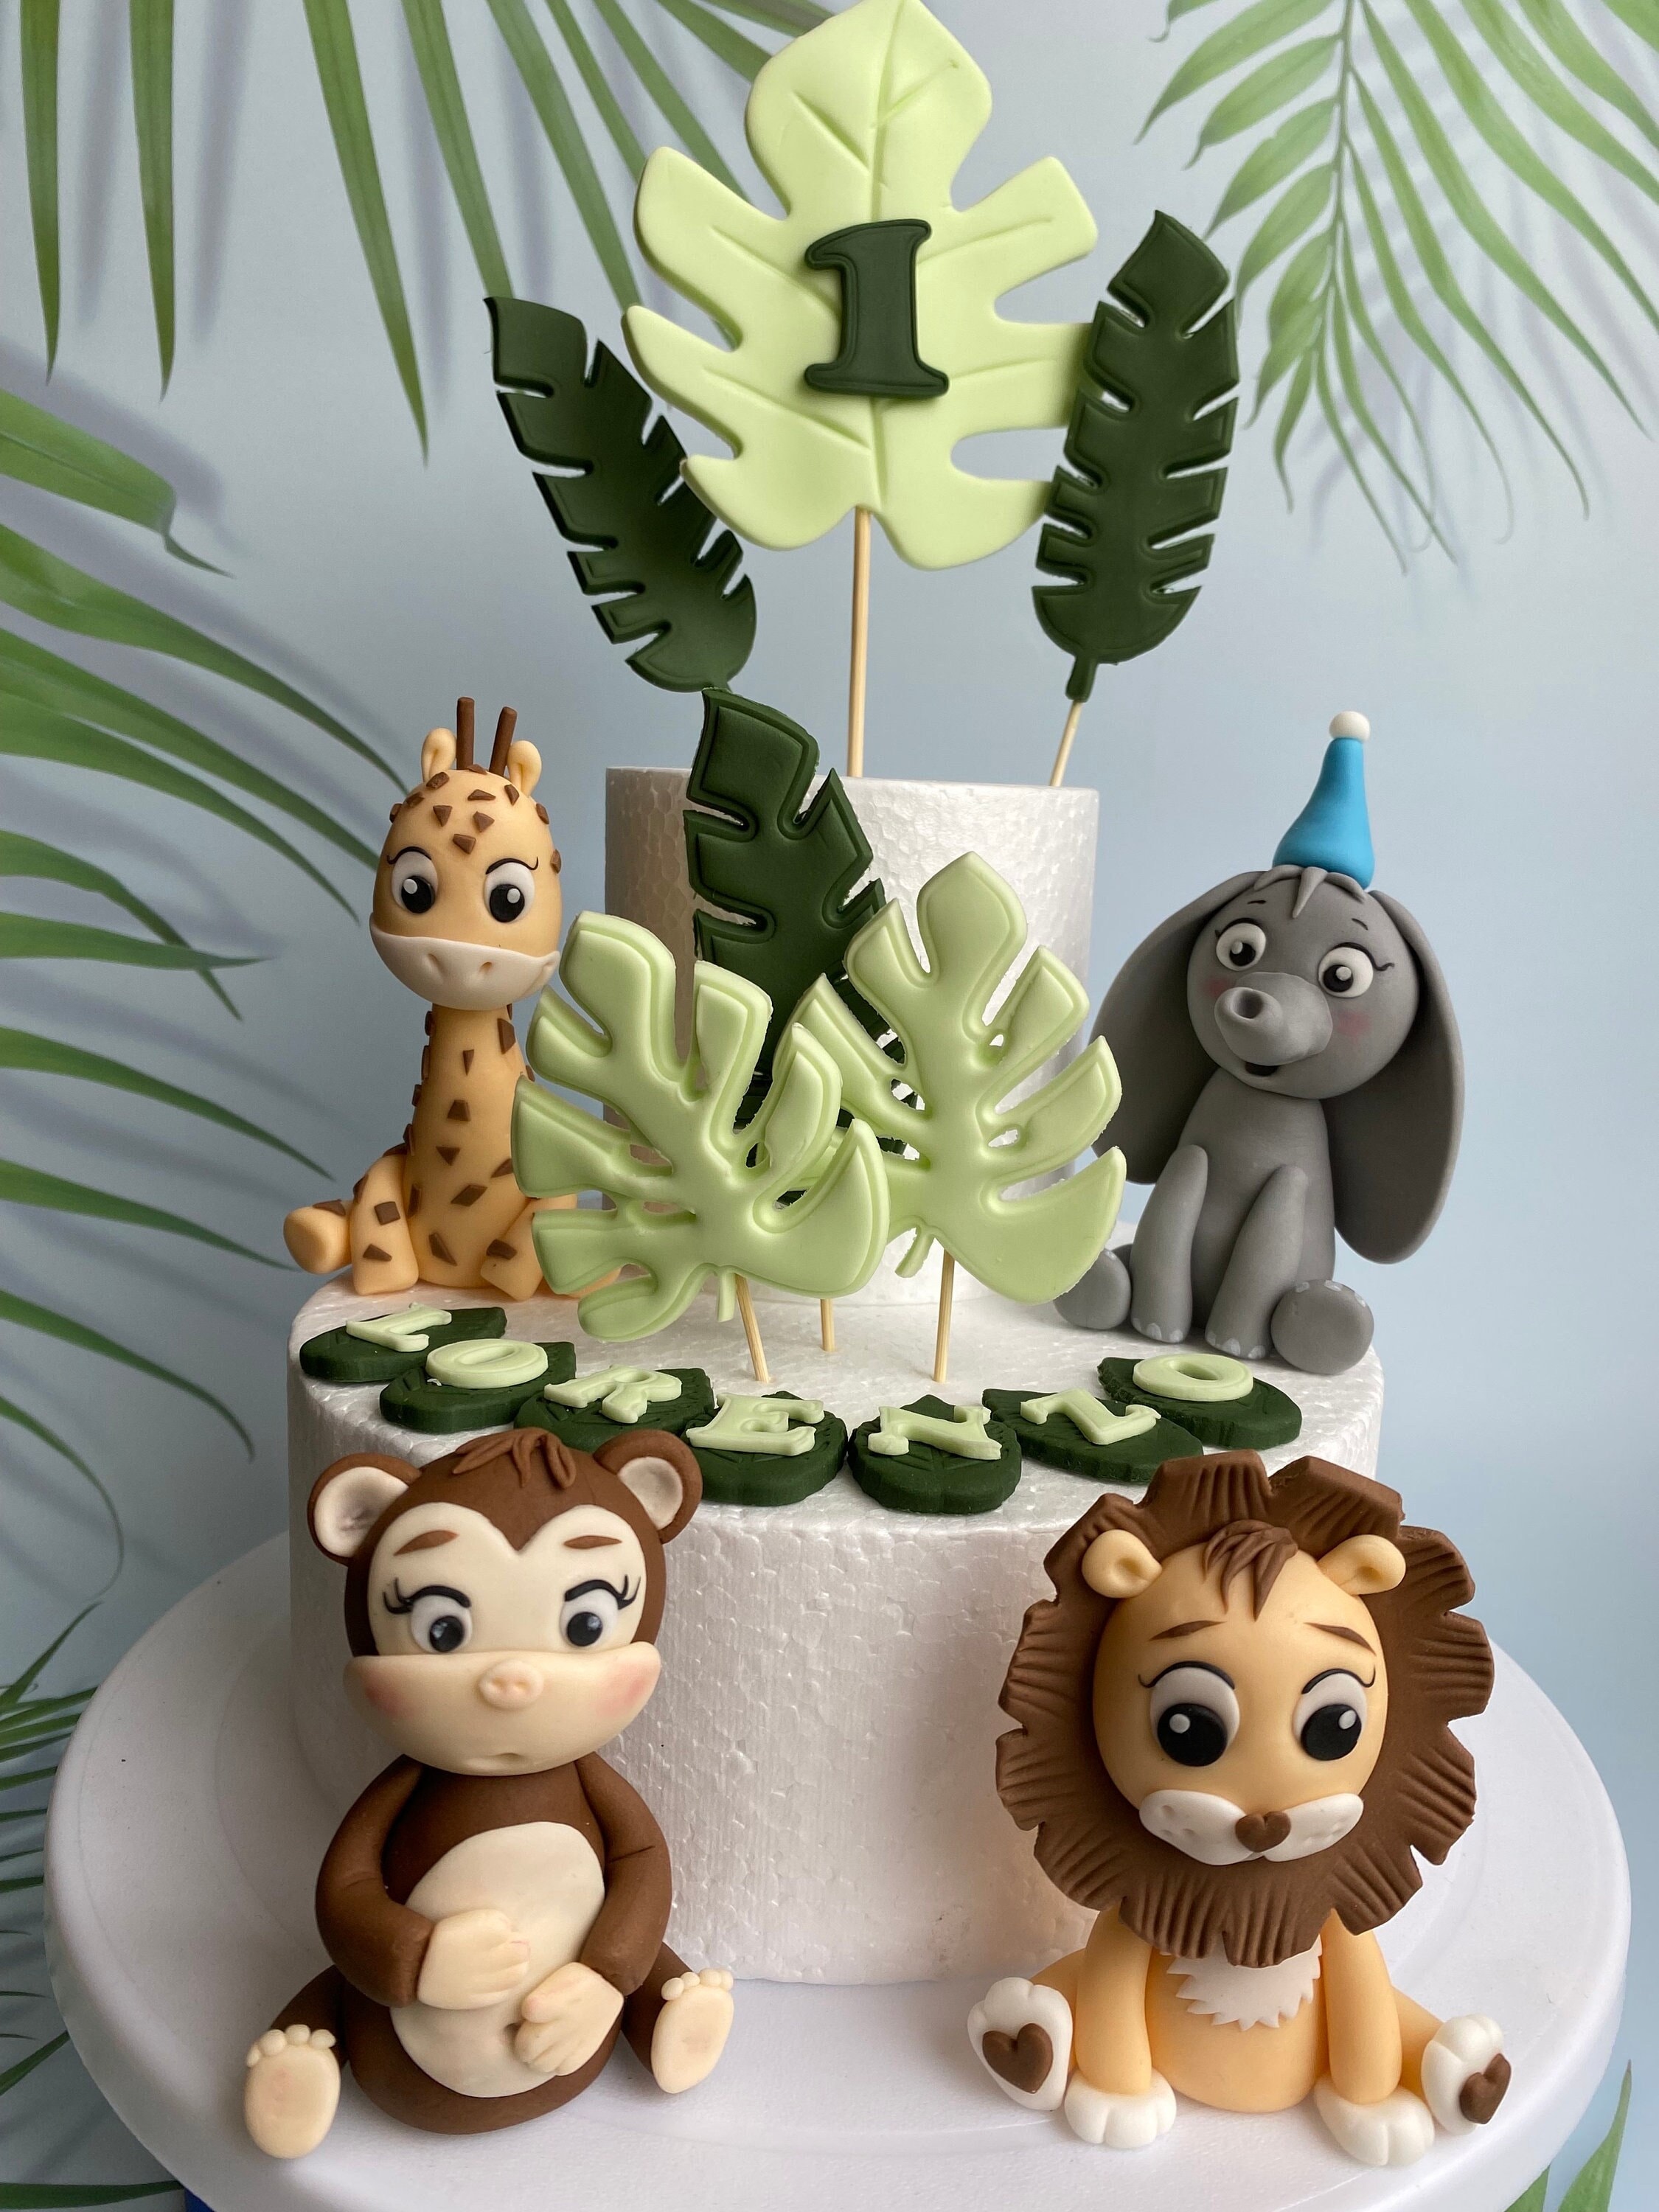 34 Two Wild Birthday Cake Ideas : Two tier cakes, safari style